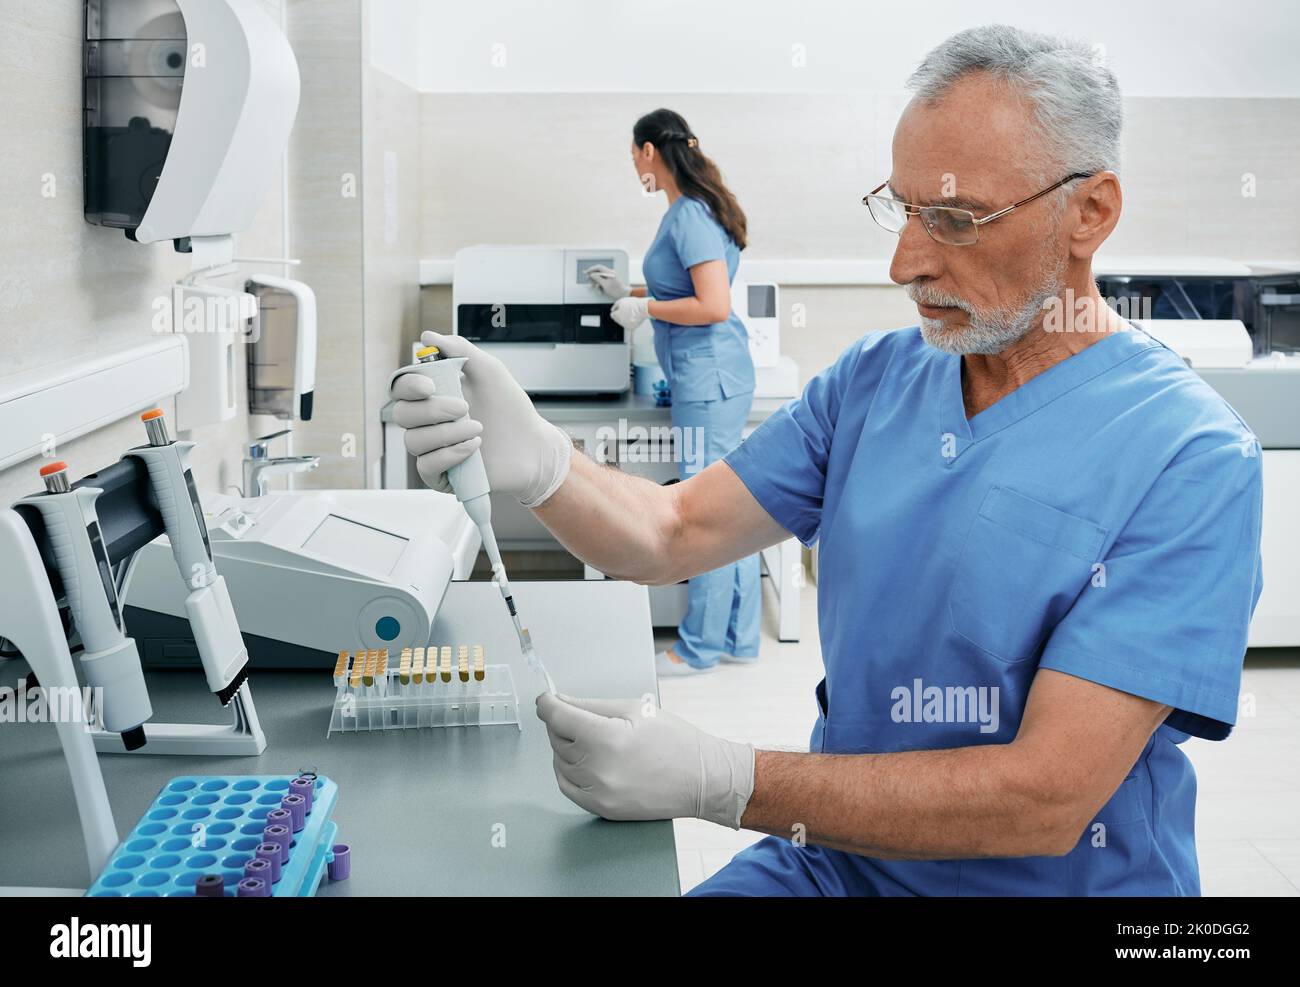 Tecnici di laboratorio che lavorano in laboratorio medico e ricercando campioni di sangue utilizzando la tecnologia moderna Foto Stock